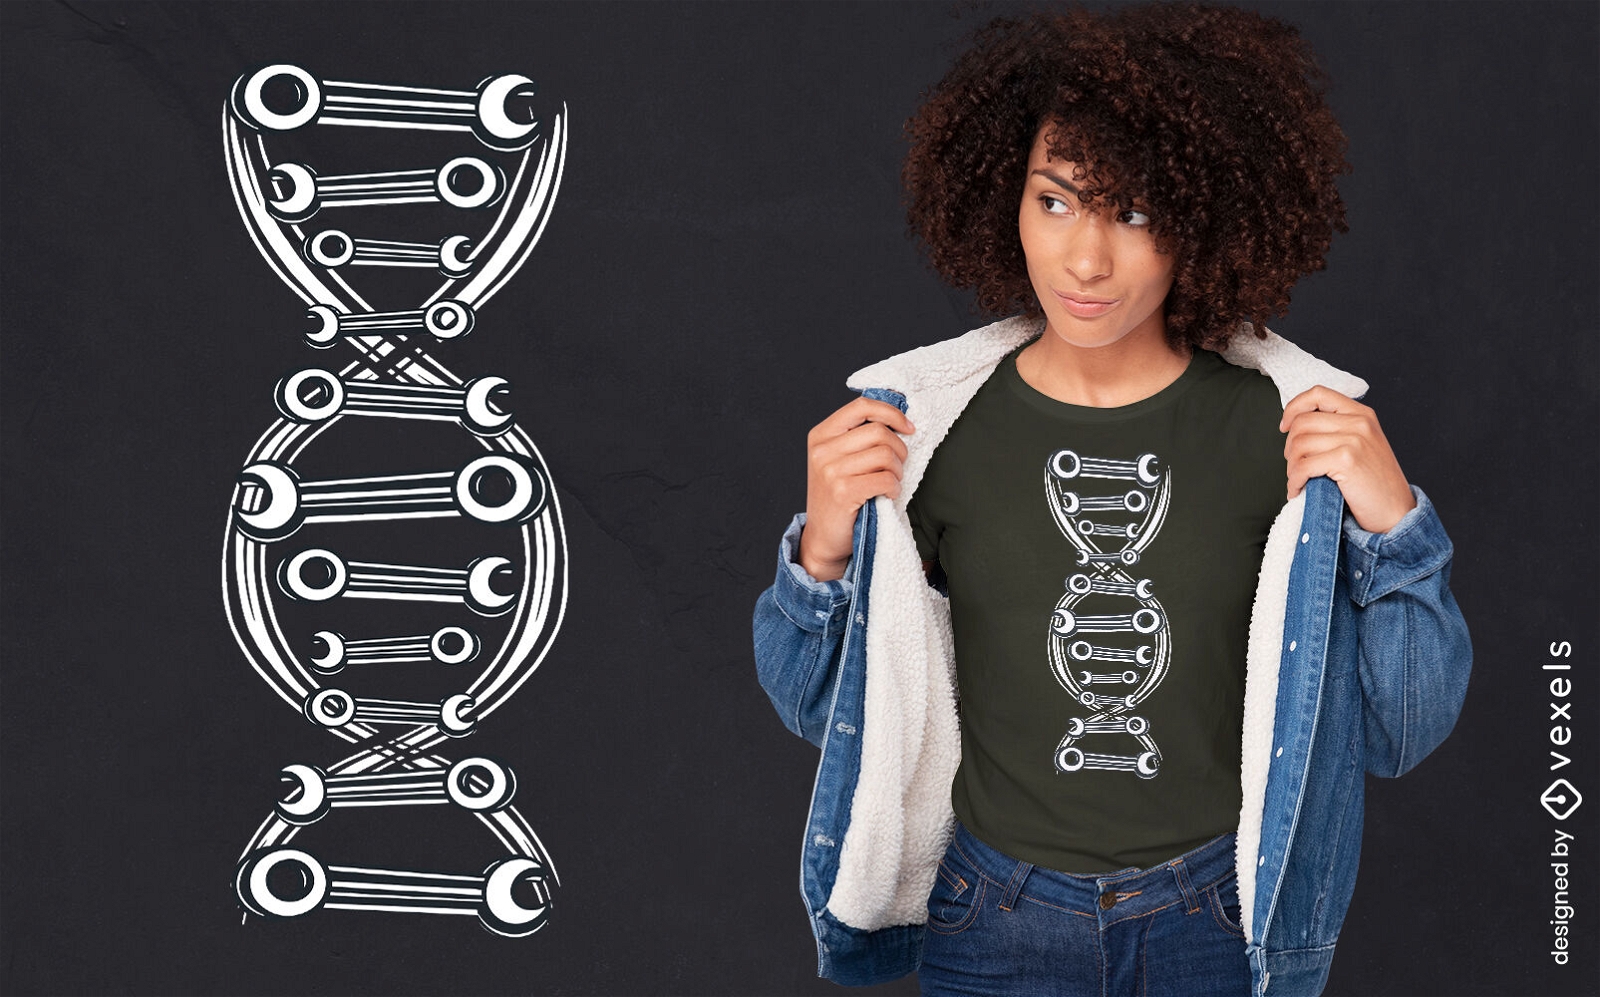 DNA com design de camiseta de ferramentas mec?nicas